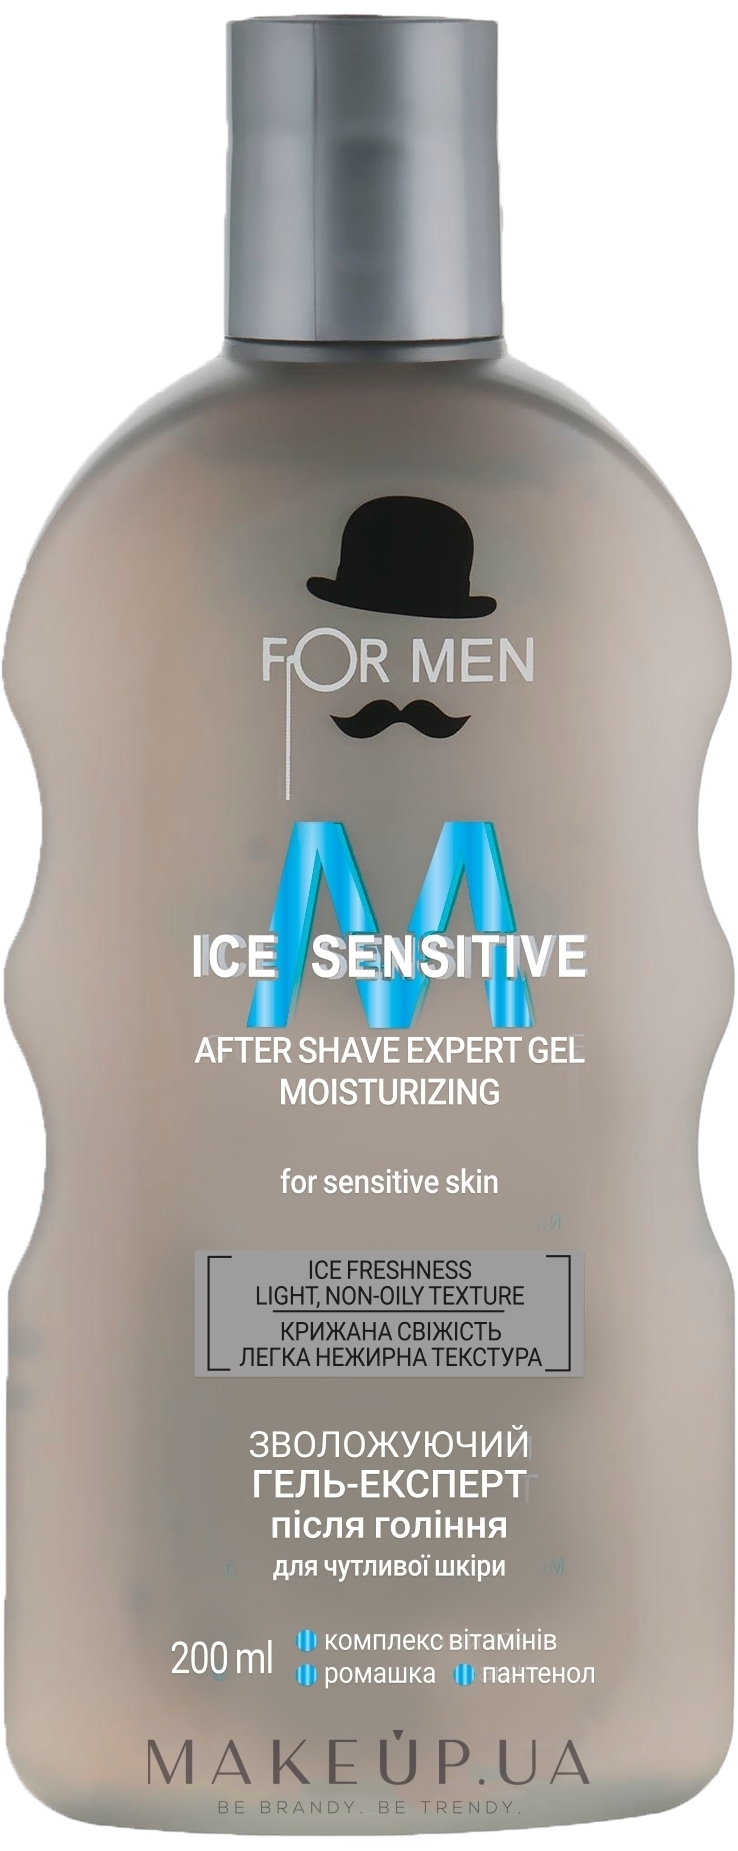 Зволожувальний гель-експерт після гоління  - Alliance Professional For Men Ice Sencitive — фото 200ml